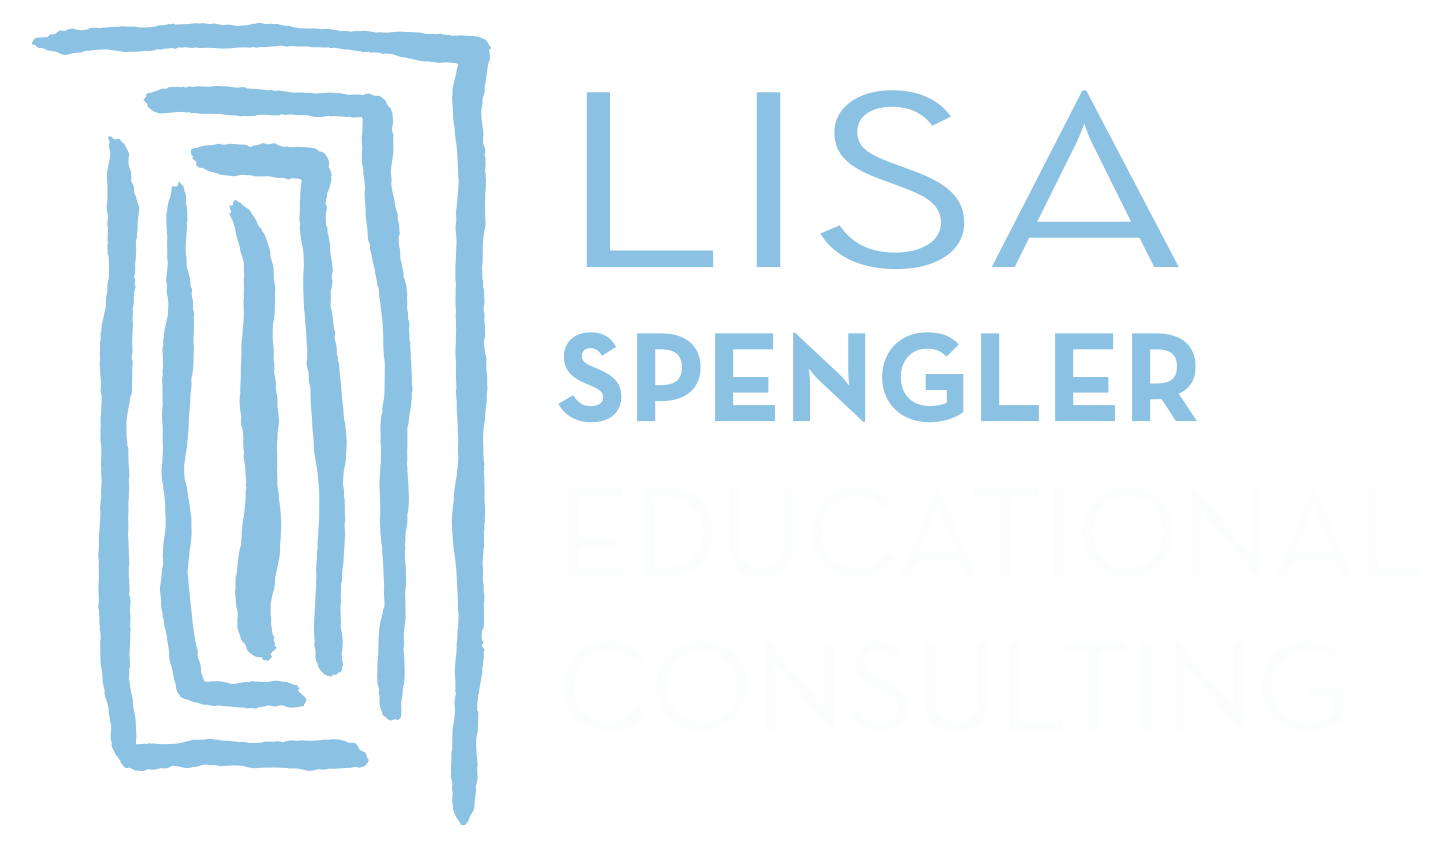 Lisa Spengler Consulting